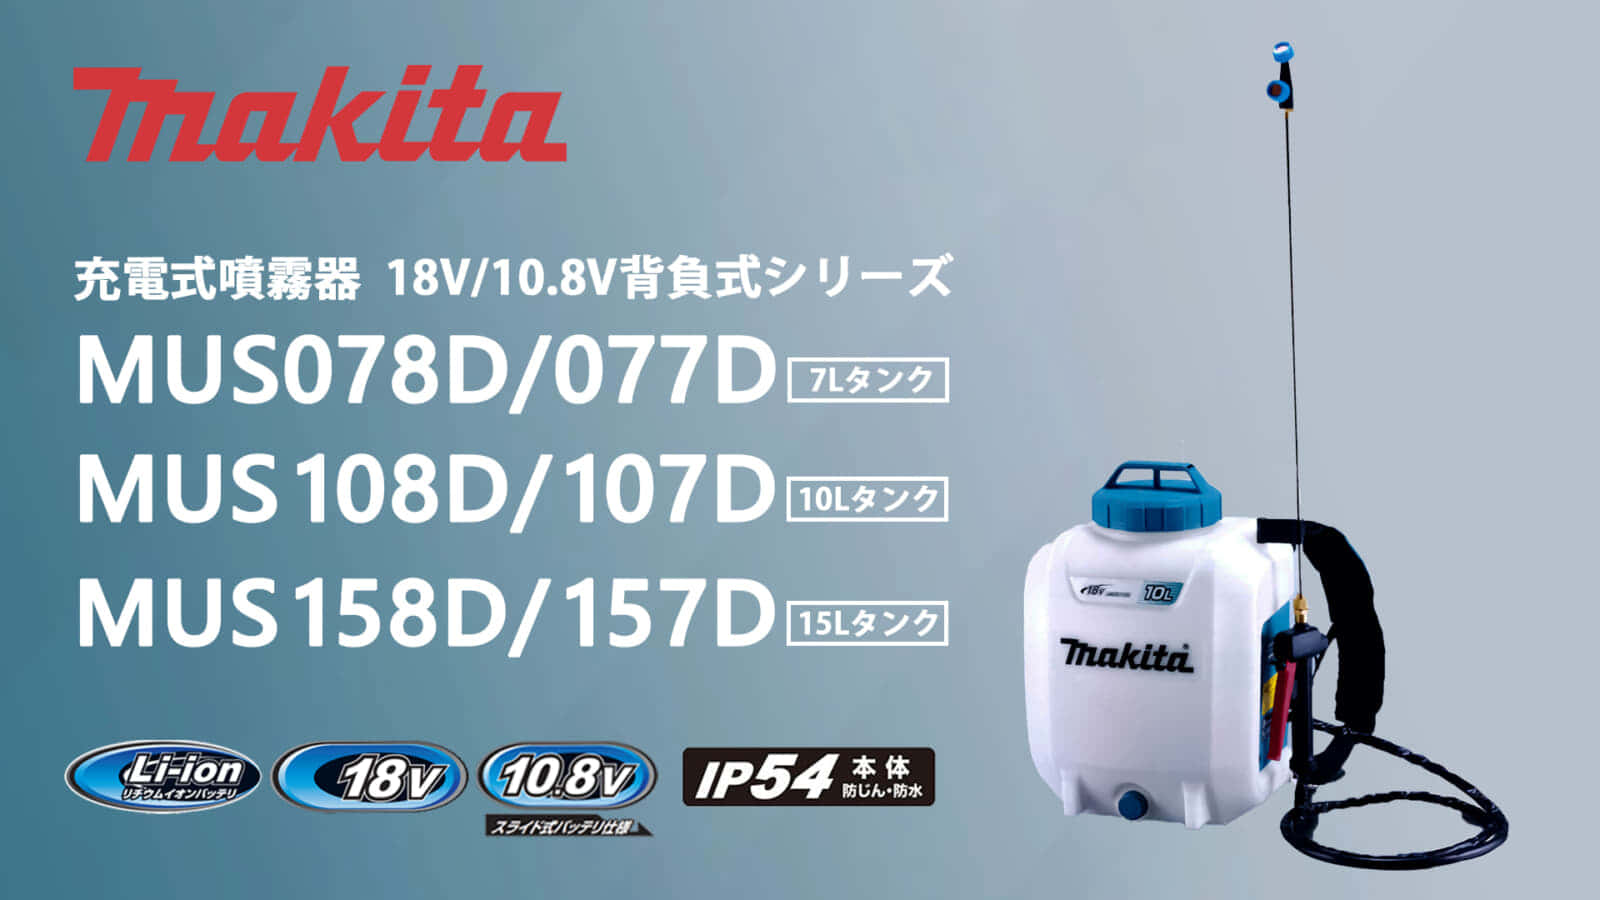 マキタ MUS078 充電式噴霧器シリーズを発売、本格的な噴霧作業に対応する大容量タイプ